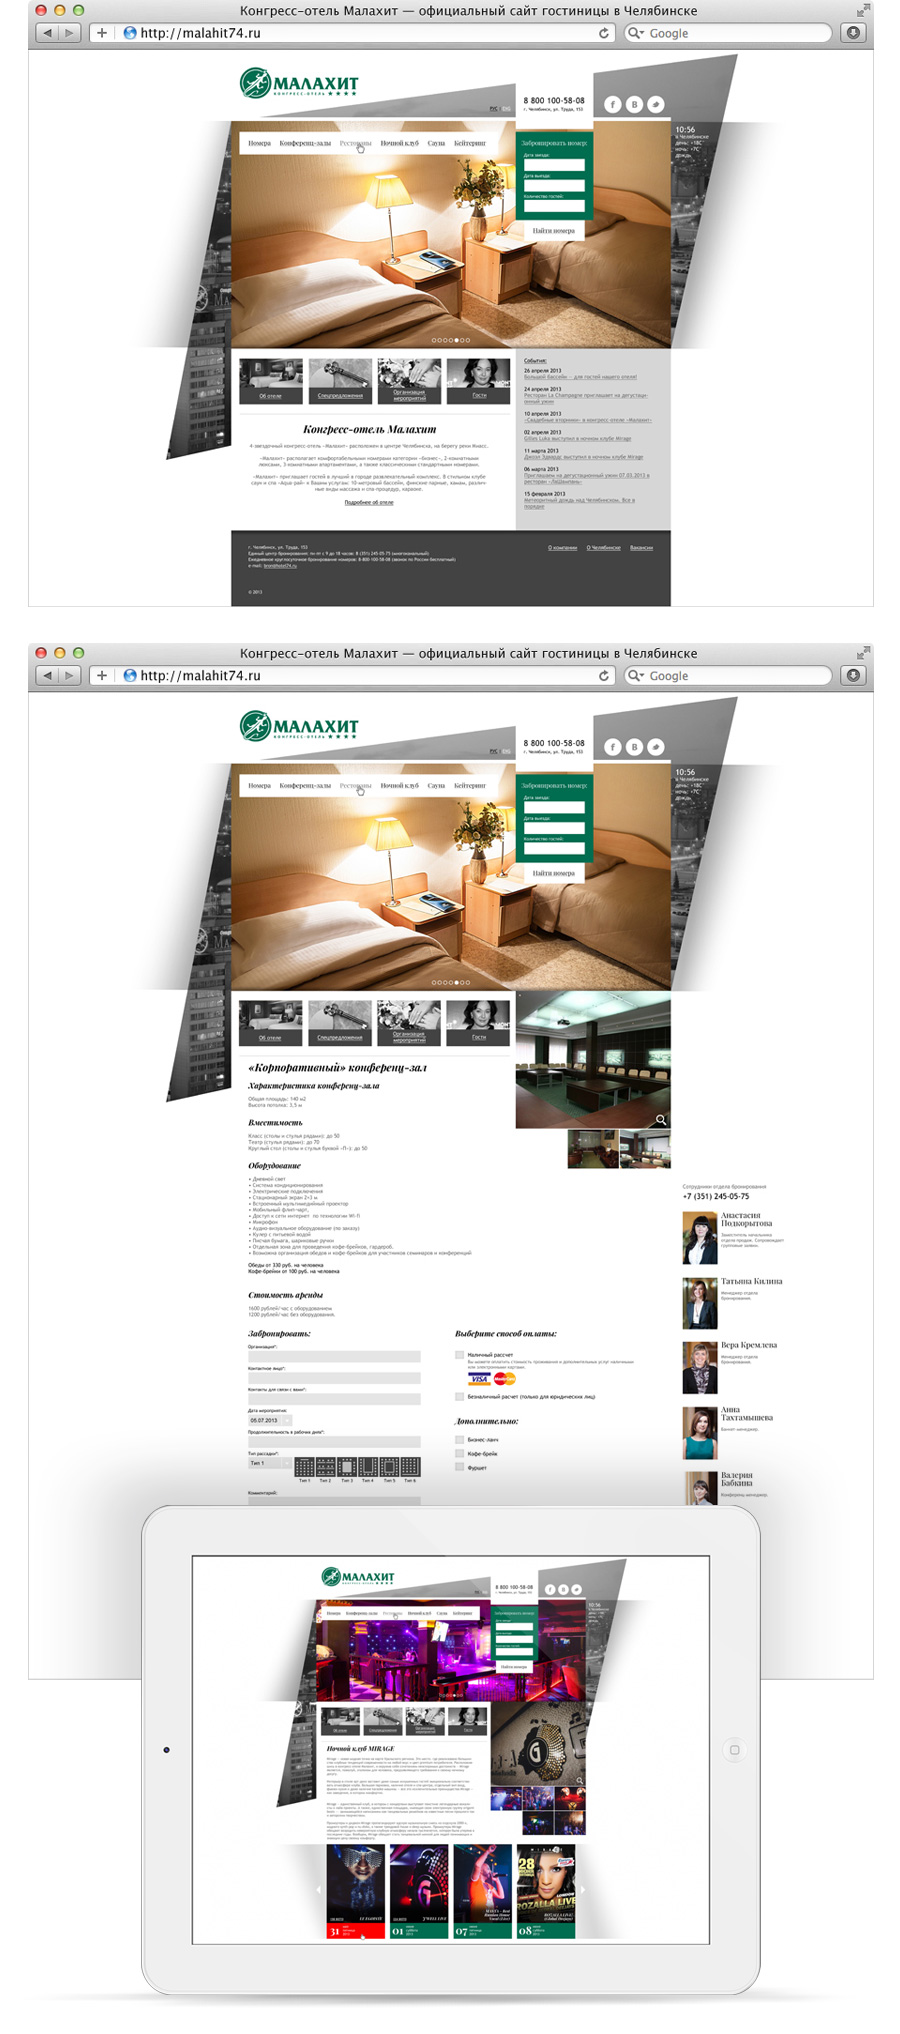 Несколько экранов нового сайта отеля Малахит, демонстрирующие на своем примере те обновления, что принес новый дизайн сайту гостиницы